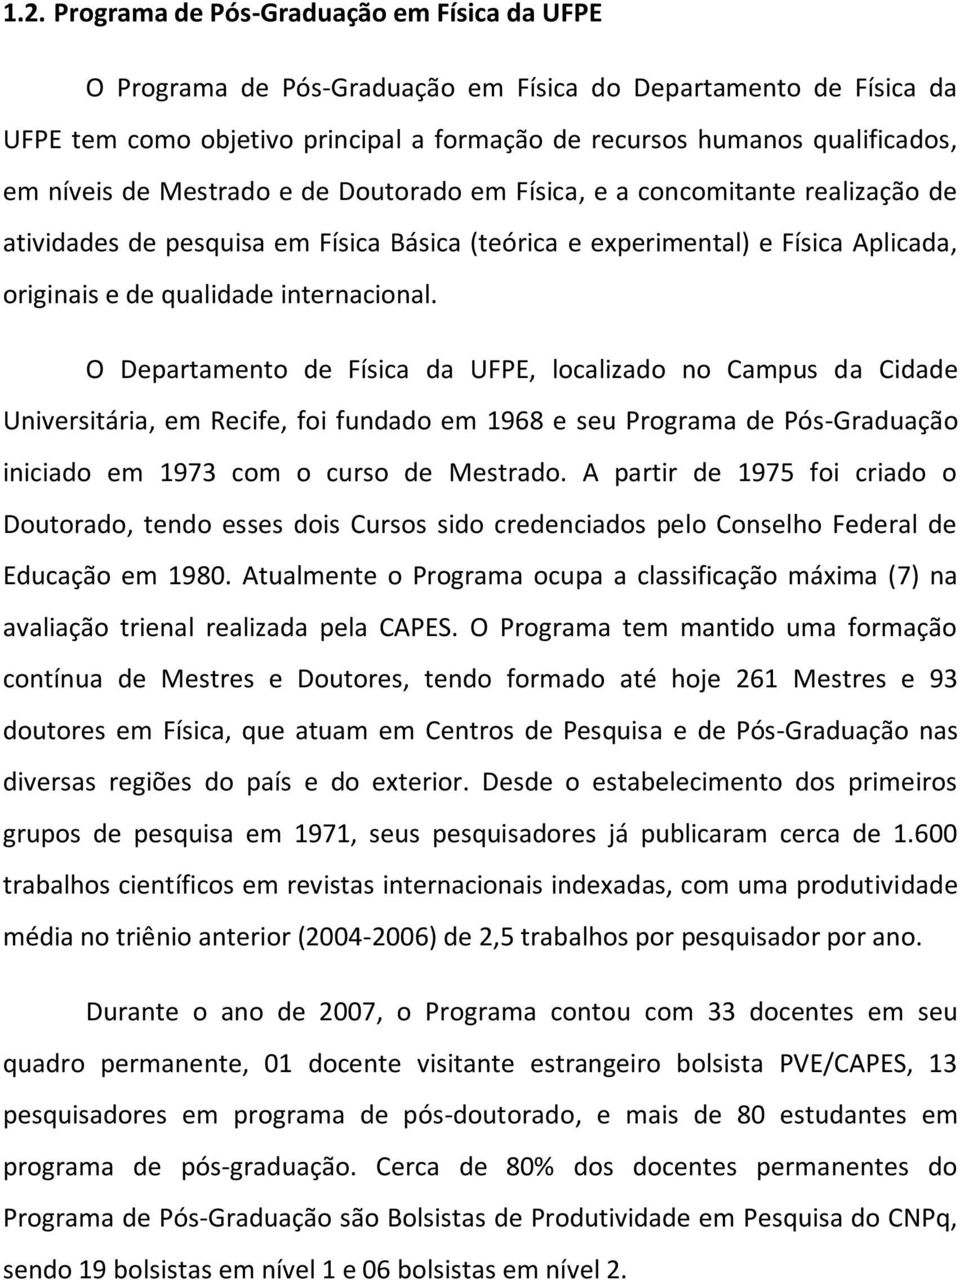 O Departamento de Física da UFPE, localizado no Campus da Cidade Universitária, em Recife, foi fundado em 1968 e seu Programa de Pós-Graduação iniciado em 1973 com o curso de Mestrado.